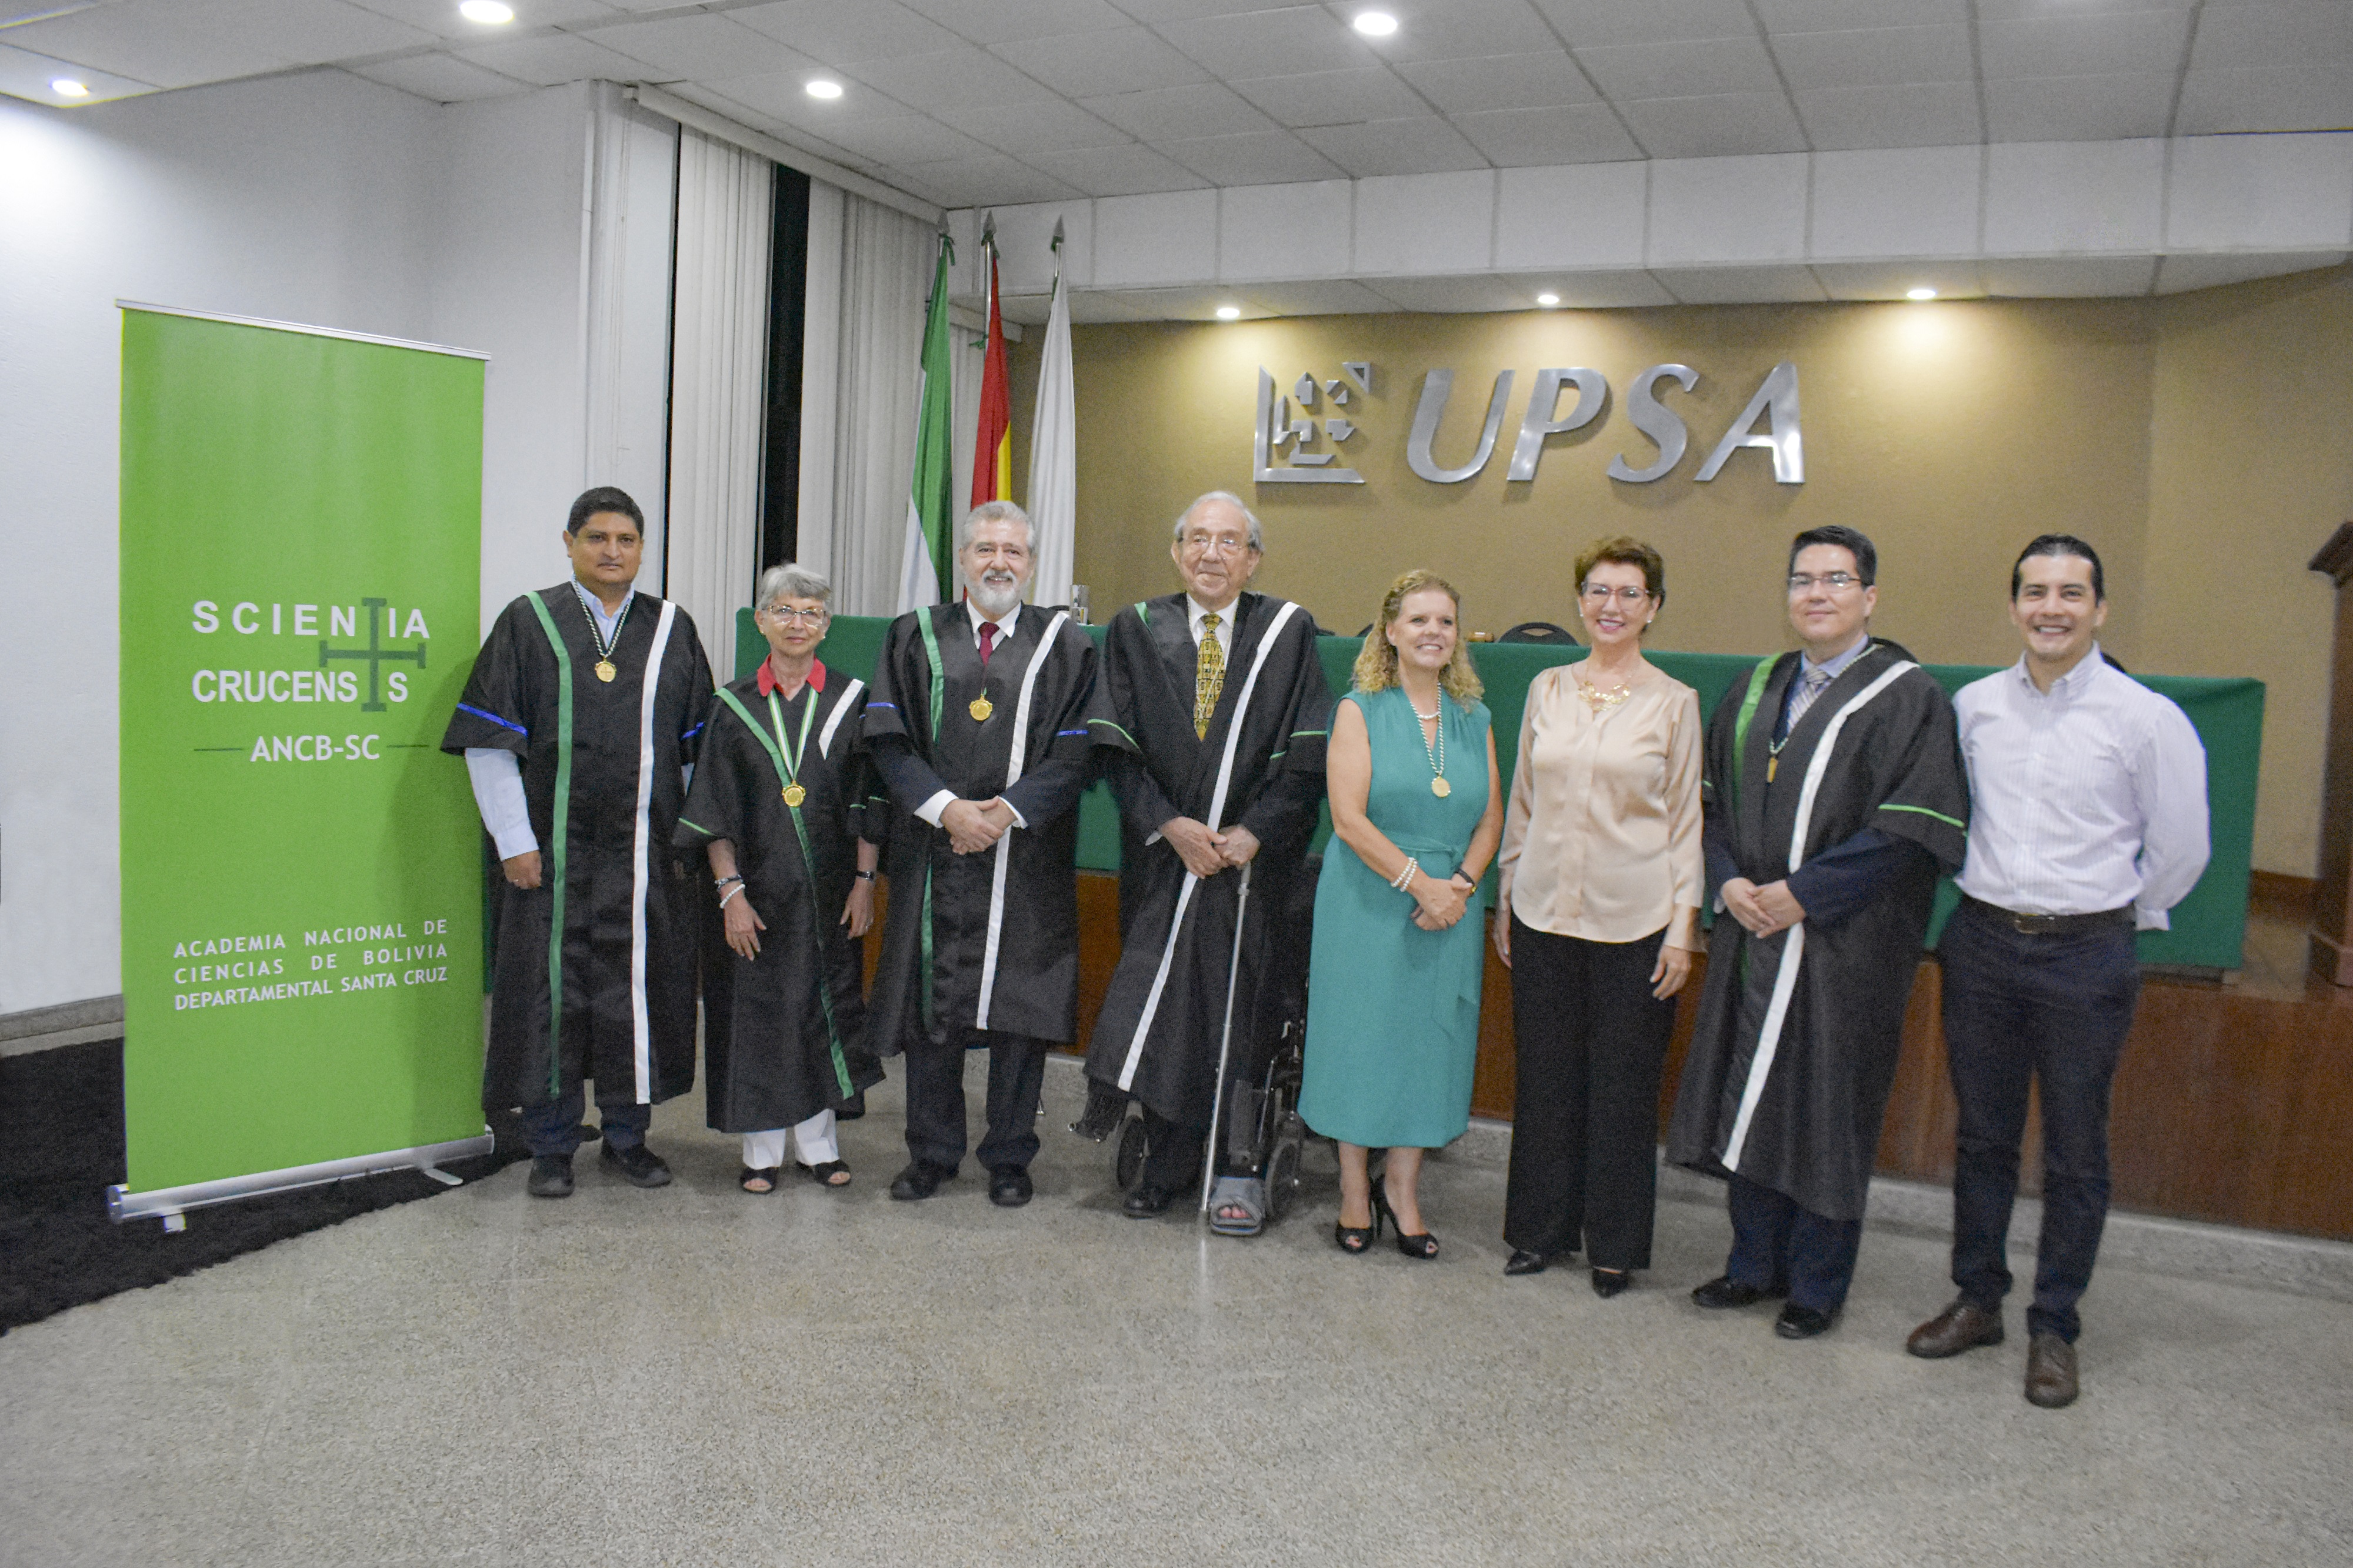 7º Premio de Ciencia de la UPSA-ANCB fue para María Mercedes Roca